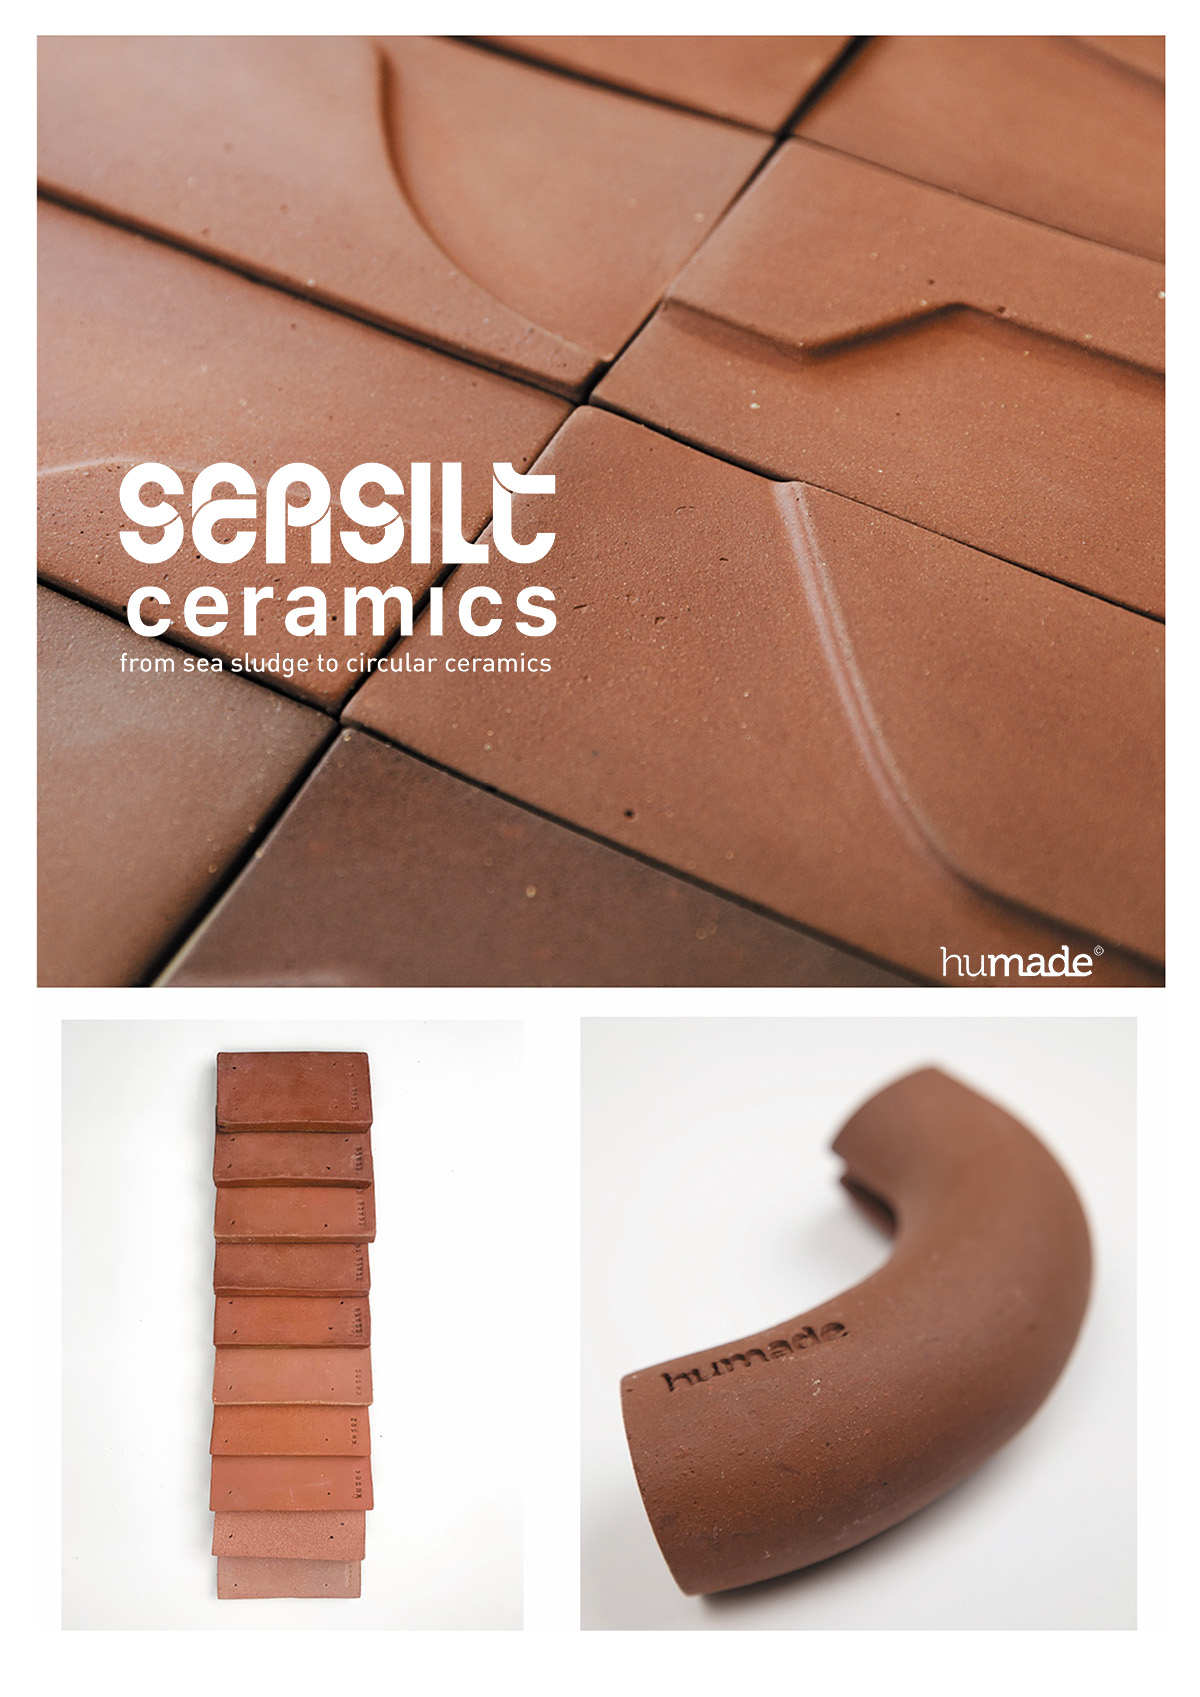 Sea silt Ceramics press release - &nbsp;
Humade, Koninklijke Tichelaar, Groningen Seaports en Deltares slaan de handen ineen voor onde...